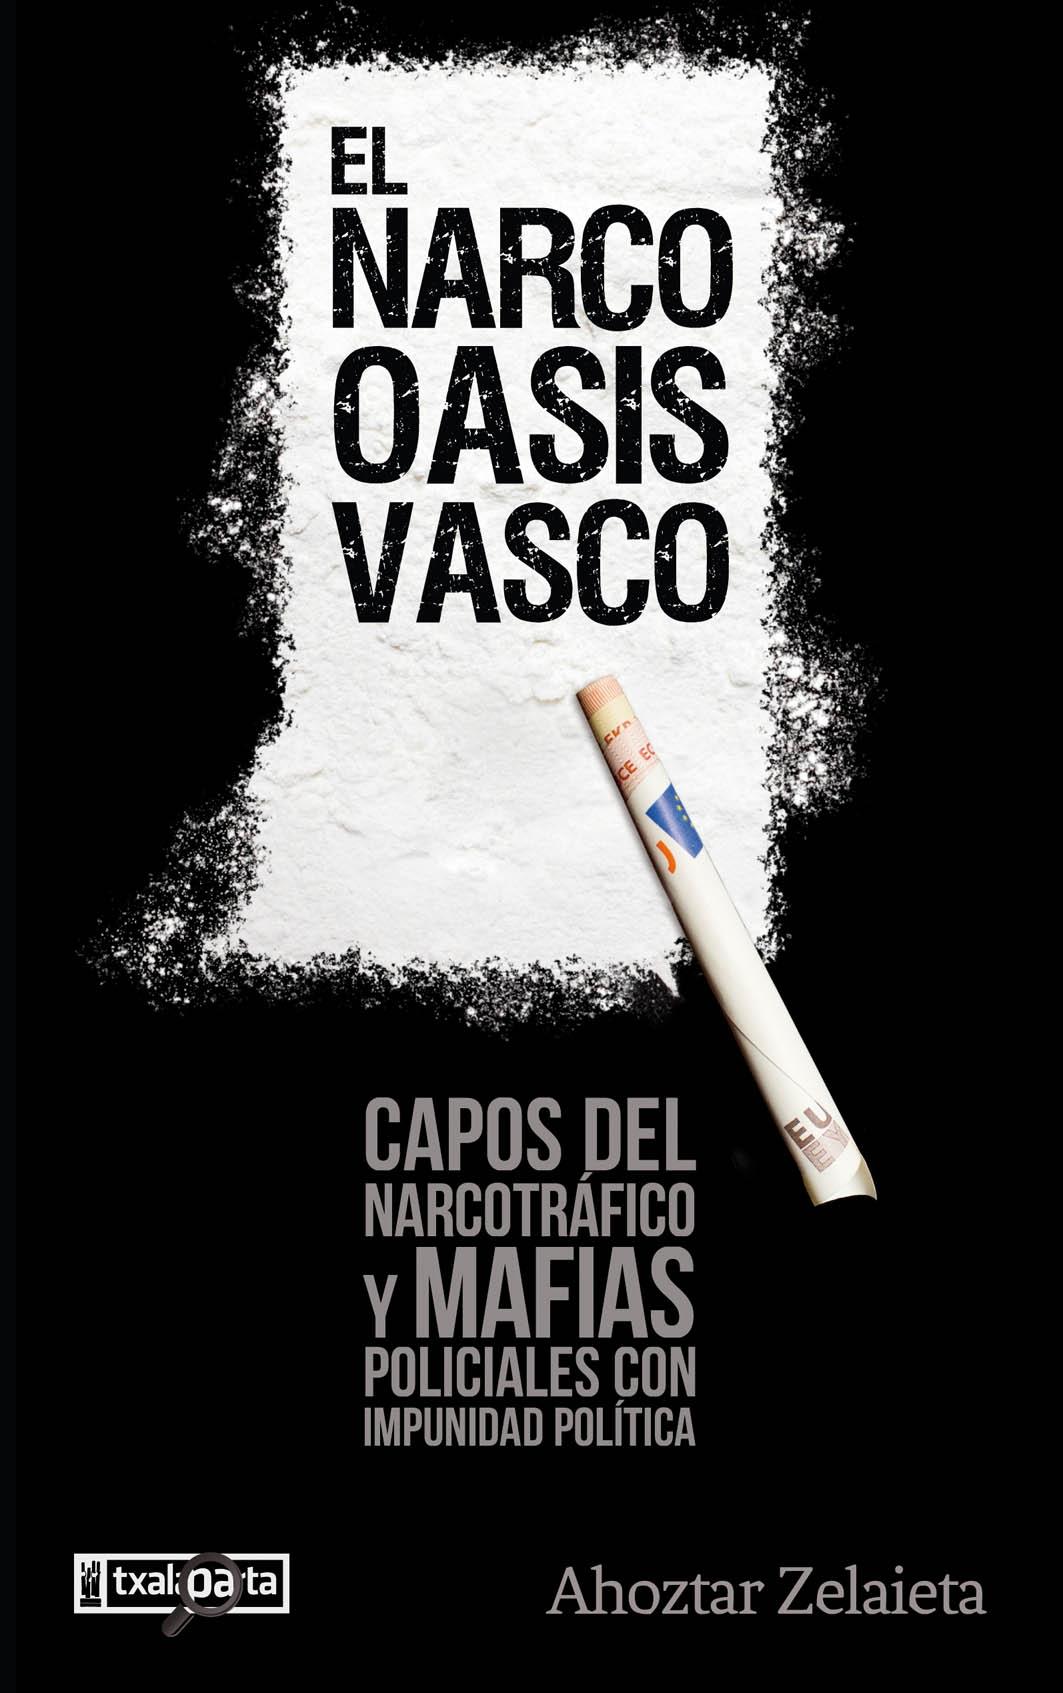 El narco oasis vasco "Capos del narcotráfico y mafias policiales con impunidad política "